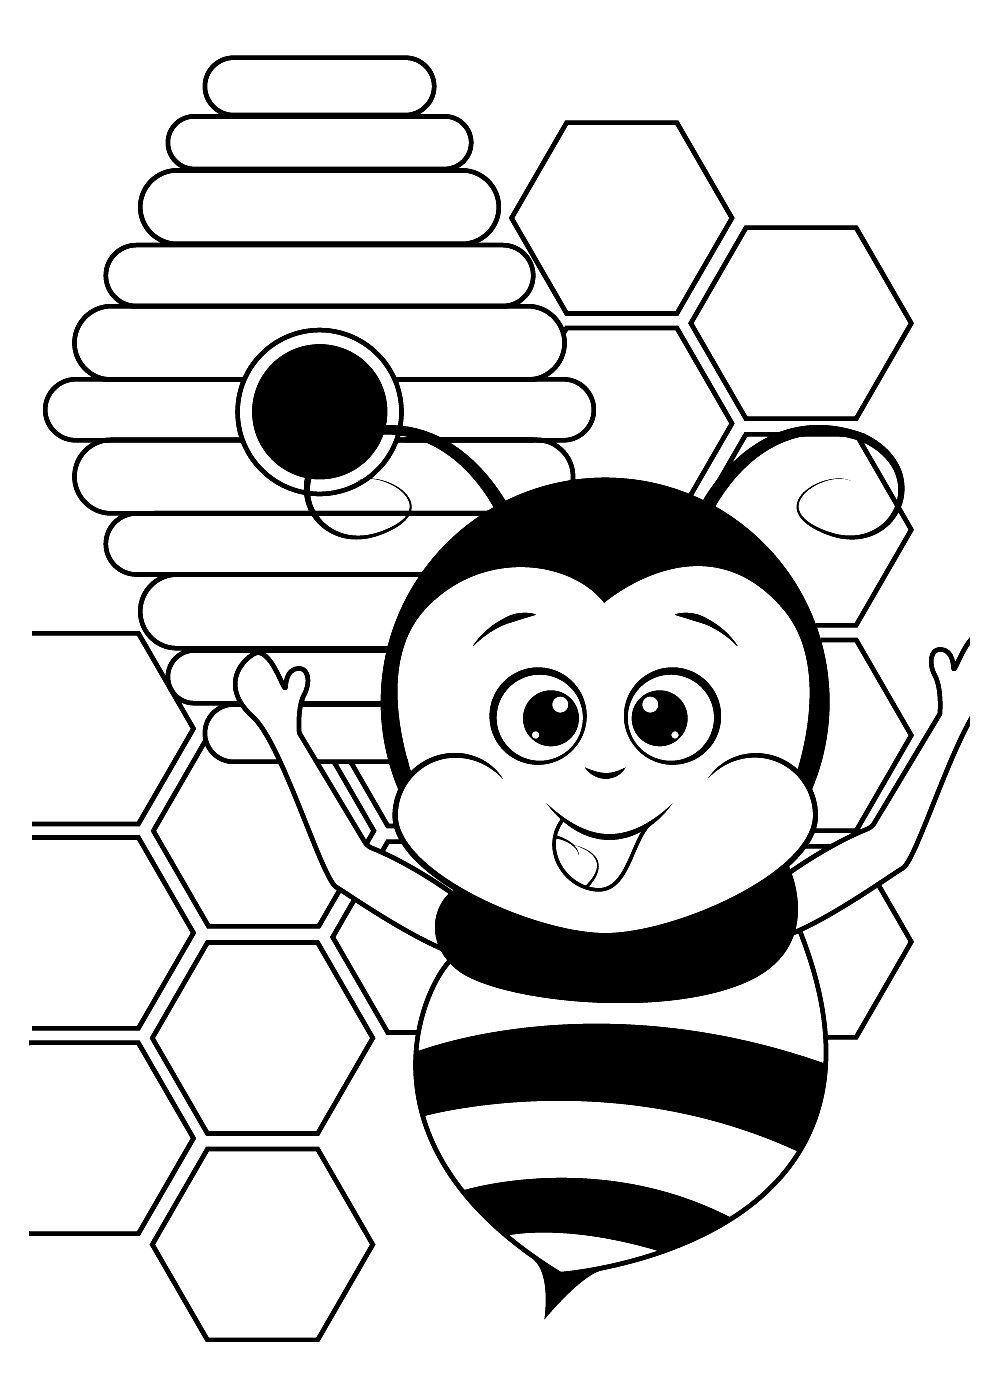 Пчелка раскраска распечатать. Пчелка раскраска. Пчела раскраска. Раскраска пчёлка для детей. Пчела раскраска для детей.